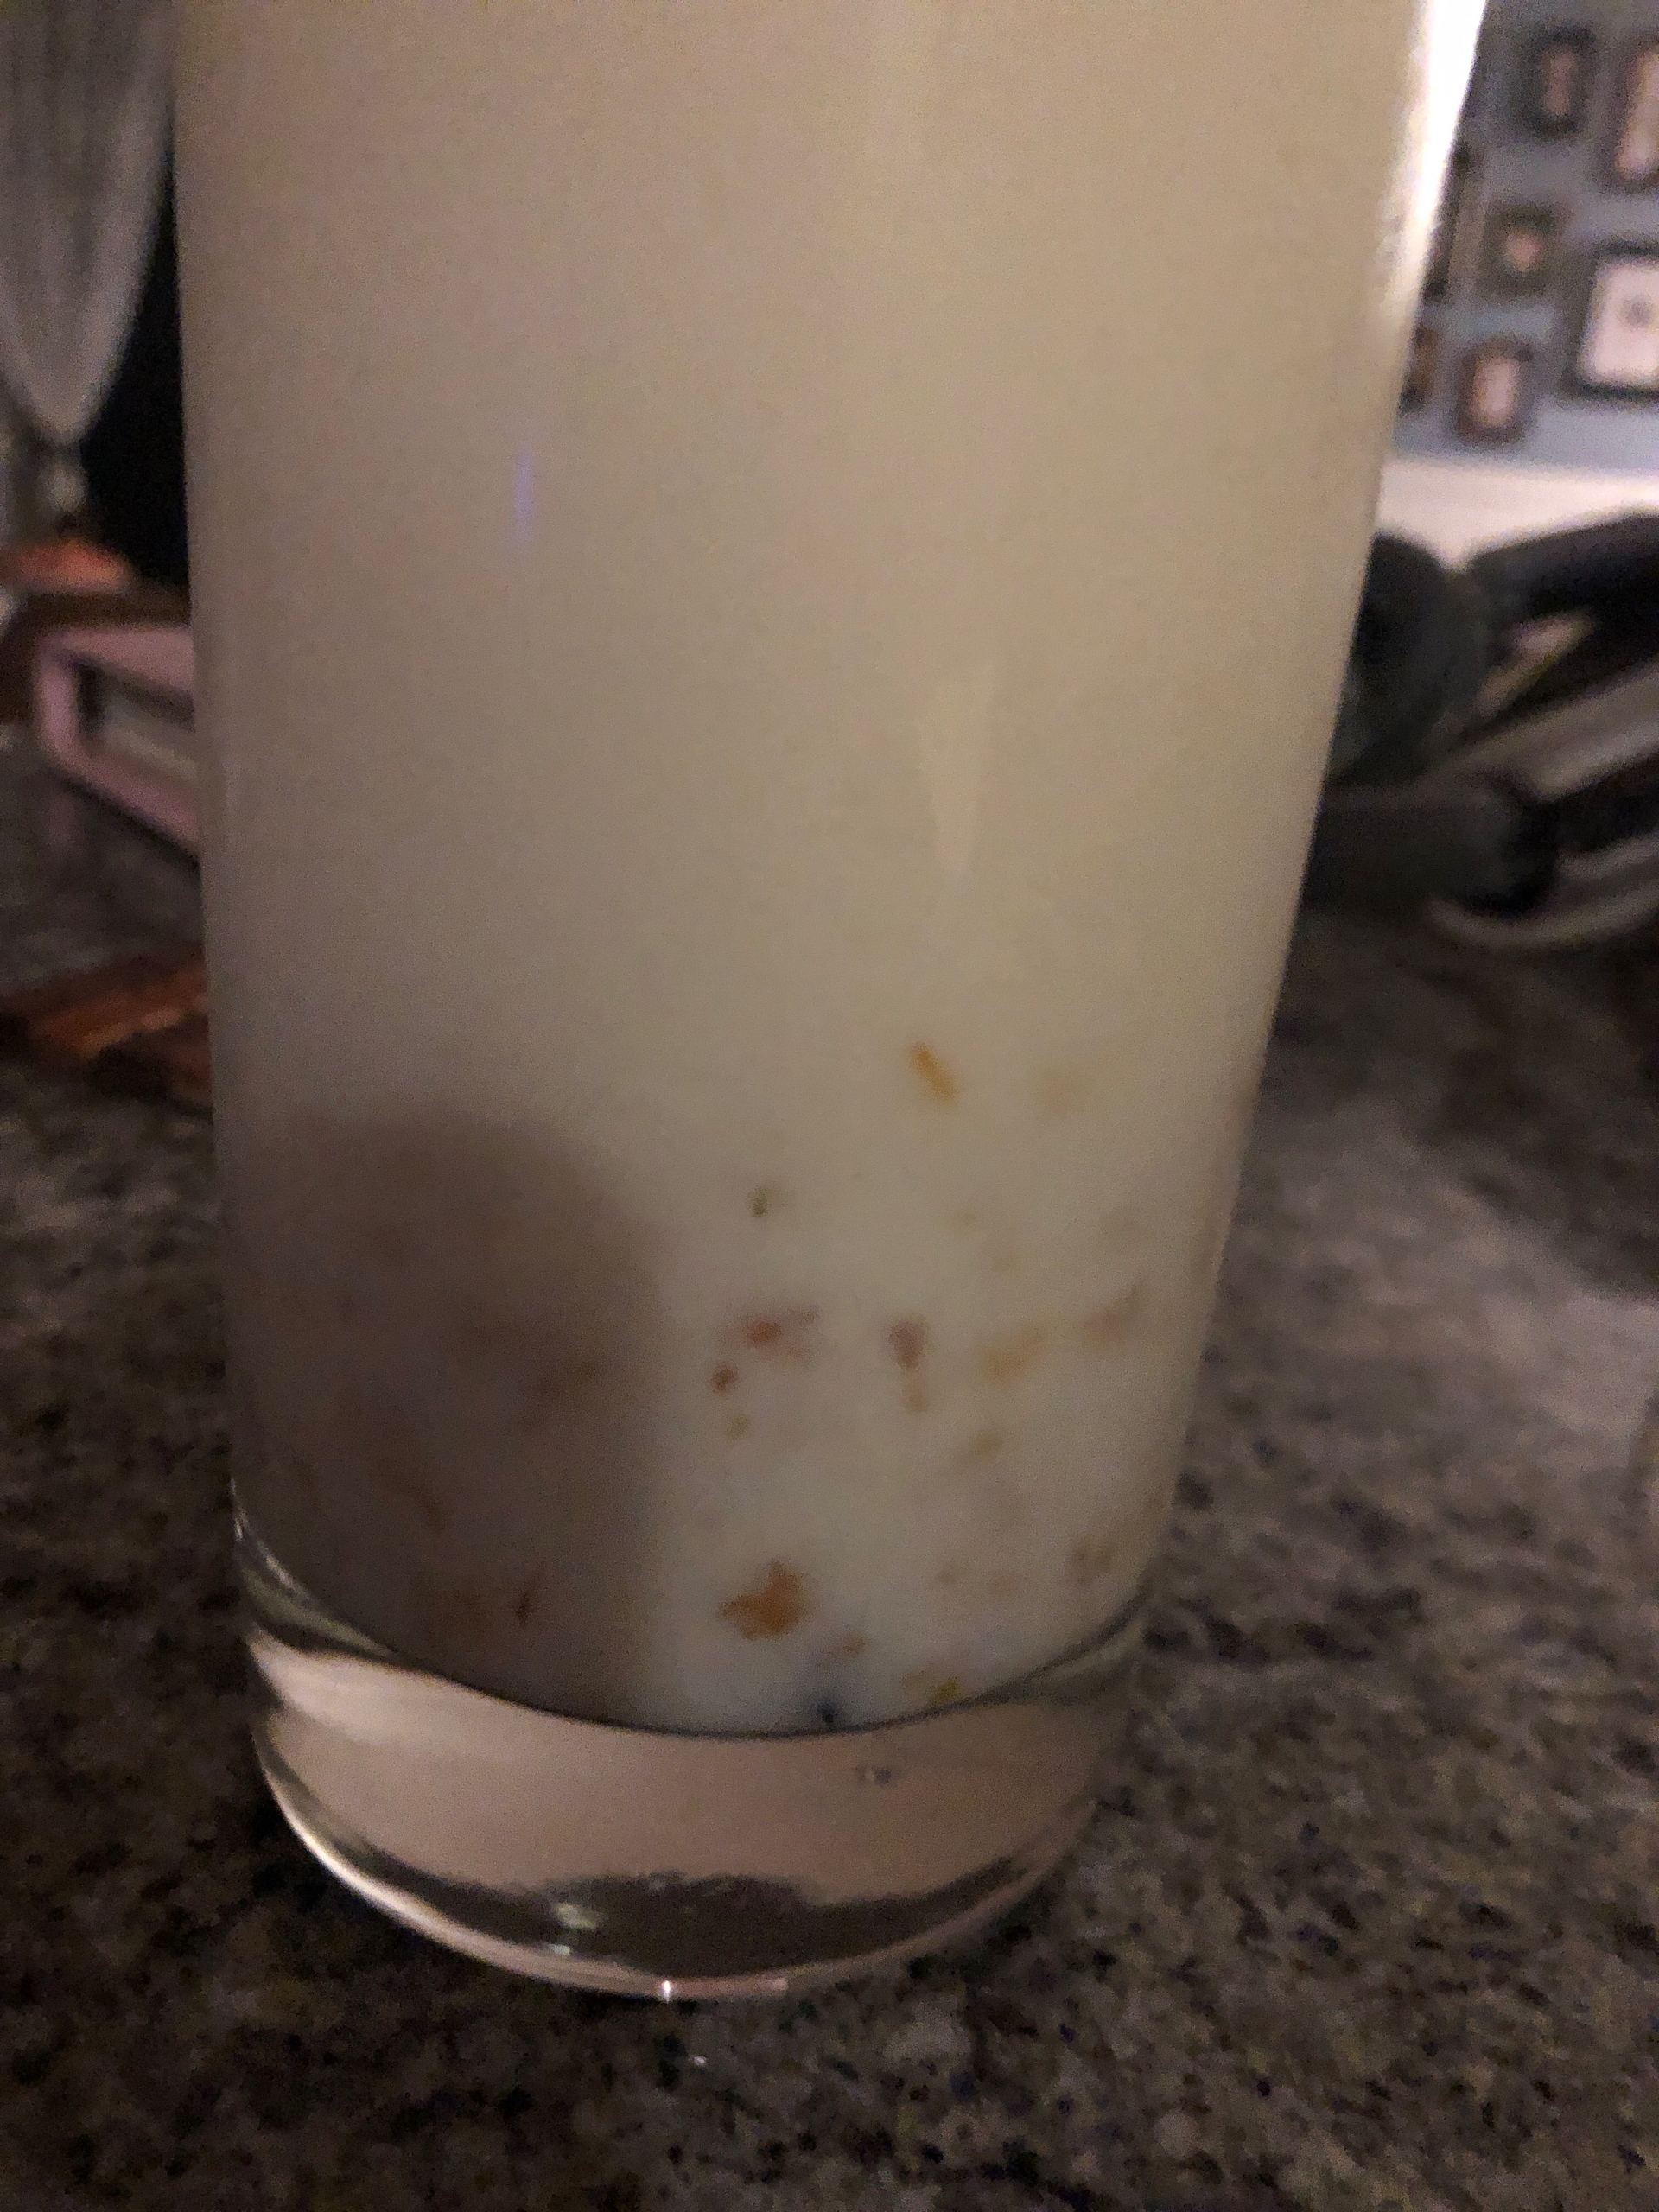 桂花酒酿冰奶🥛这个比例最好喝！